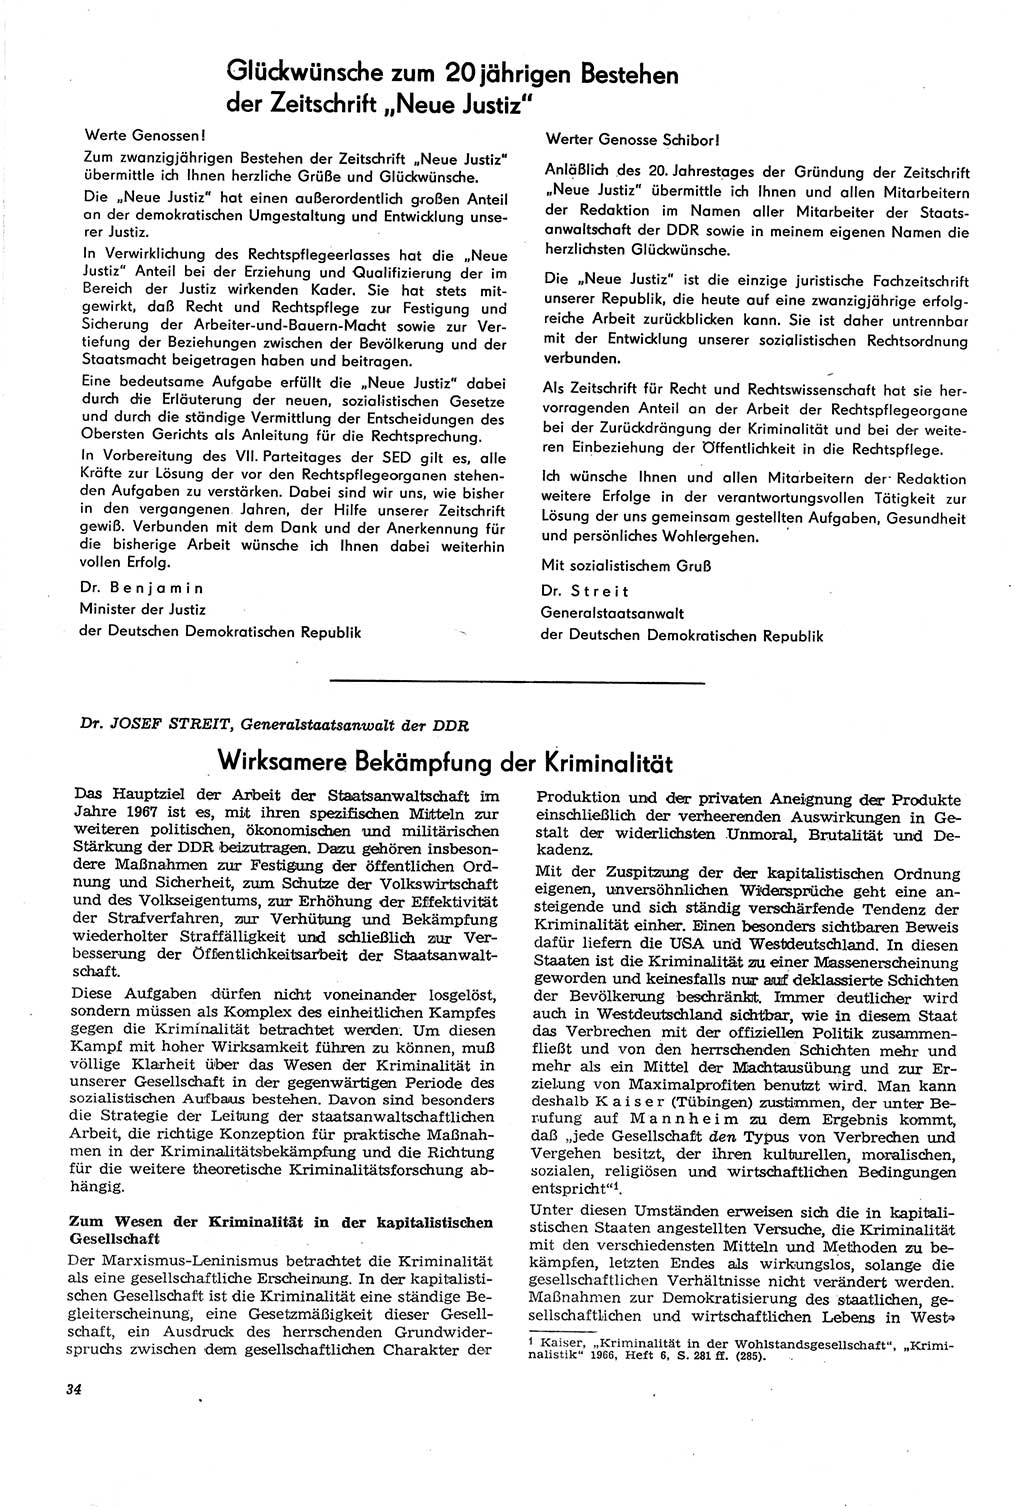 Neue Justiz (NJ), Zeitschrift für Recht und Rechtswissenschaft [Deutsche Demokratische Republik (DDR)], 21. Jahrgang 1967, Seite 34 (NJ DDR 1967, S. 34)